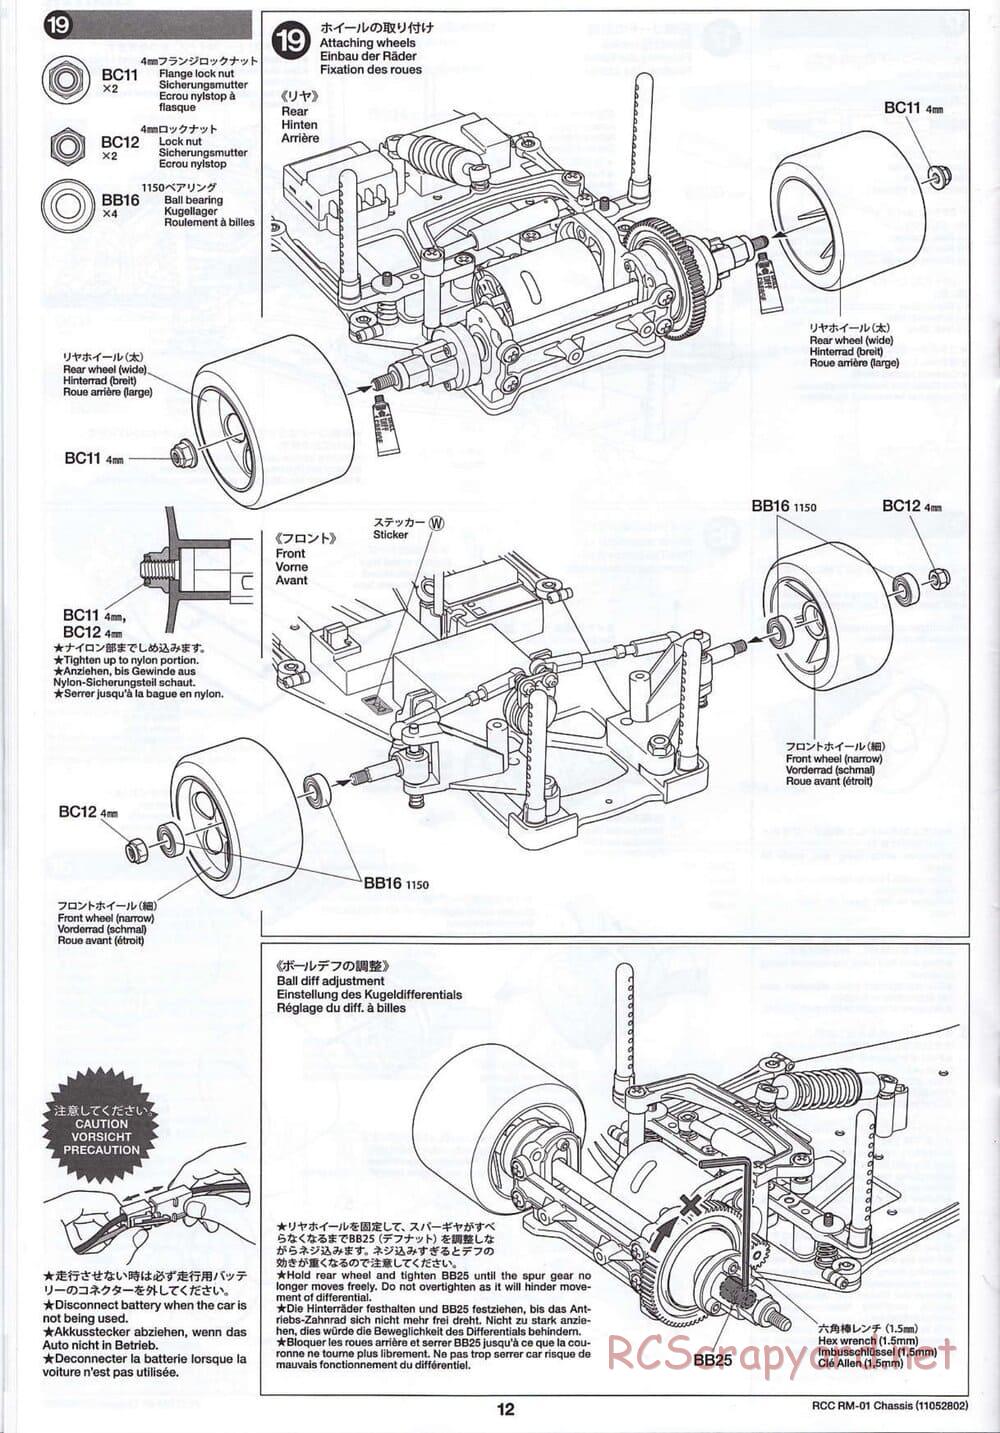 Tamiya - TA04-SS Chassis - Manual - Page 12